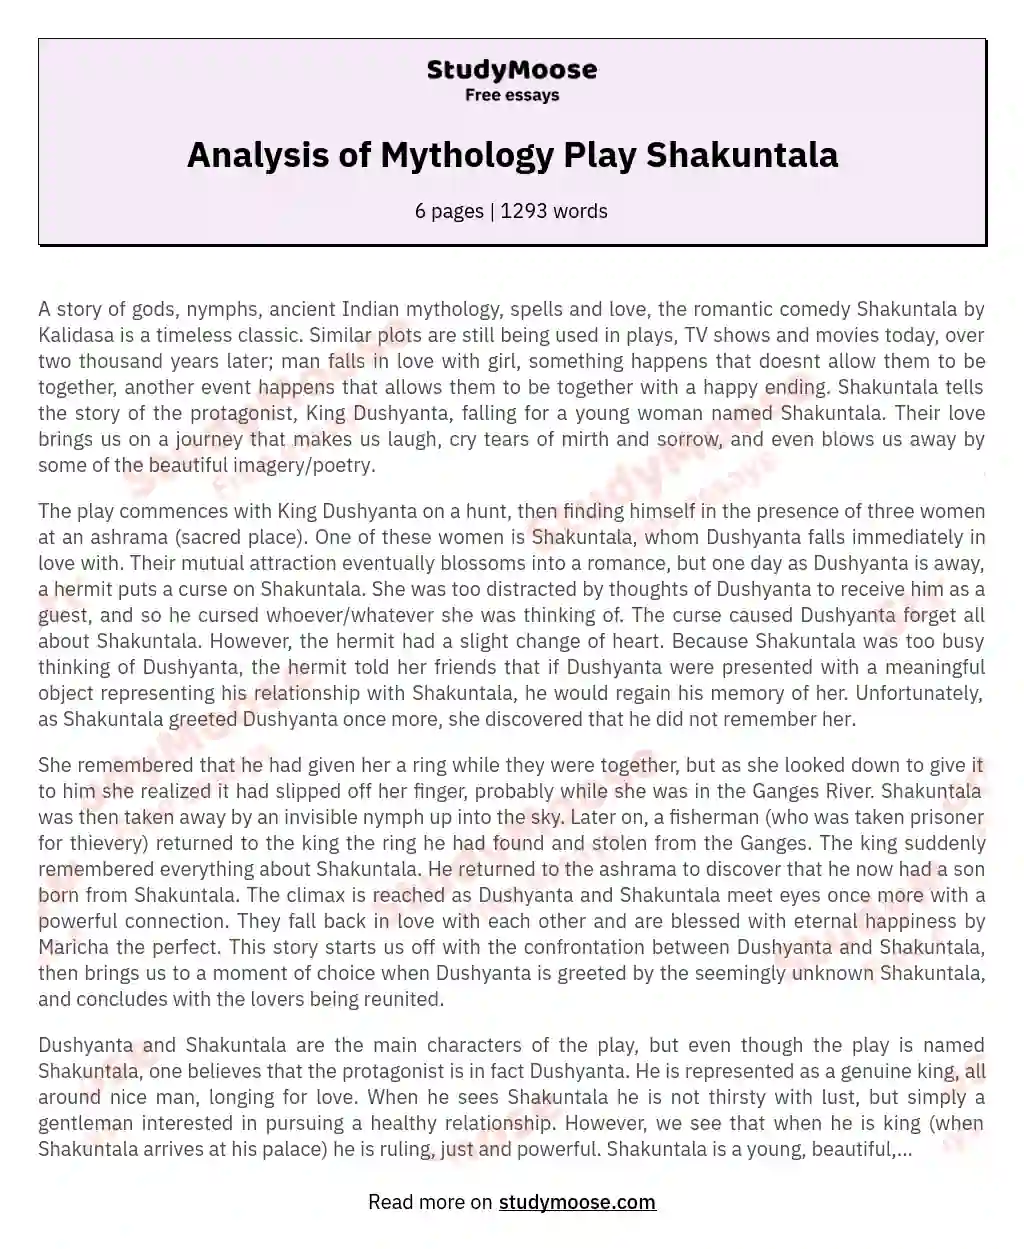 Analysis of Mythology Play Shakuntala